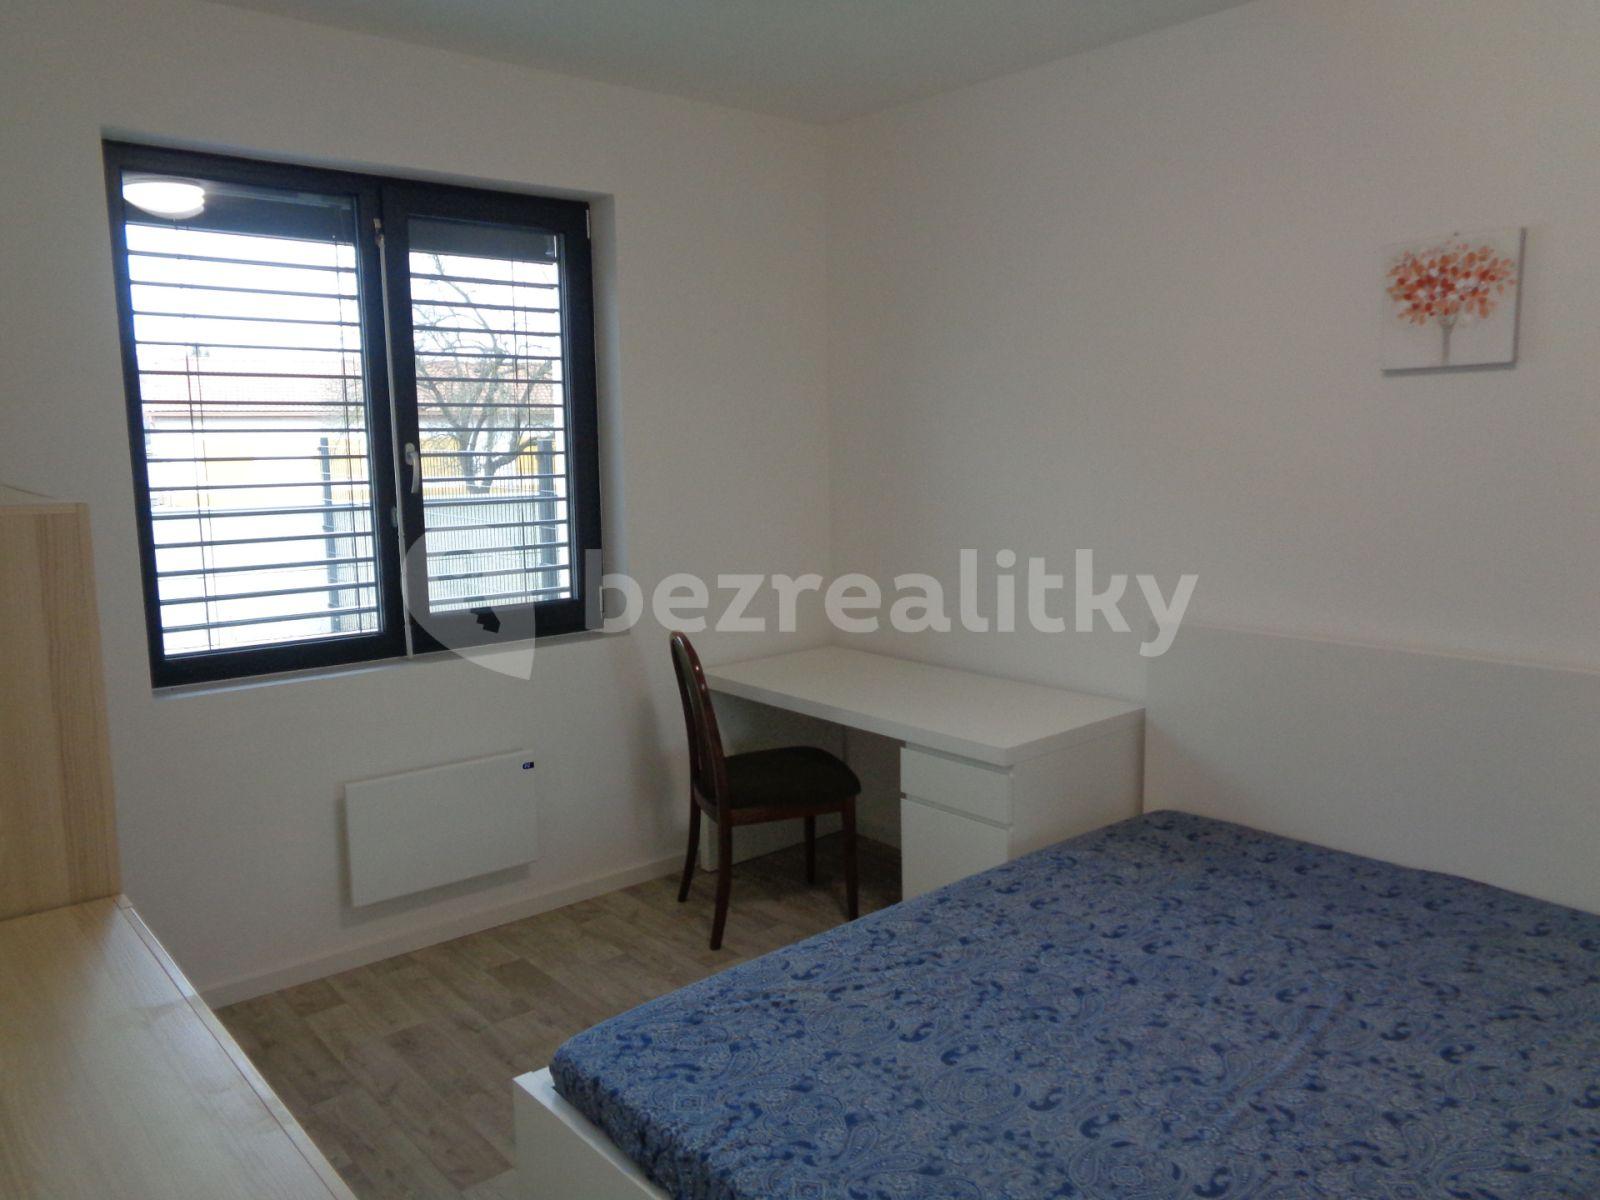 1 bedroom with open-plan kitchen flat for sale, 52 m², Sosnová, Brno, Jihomoravský Region